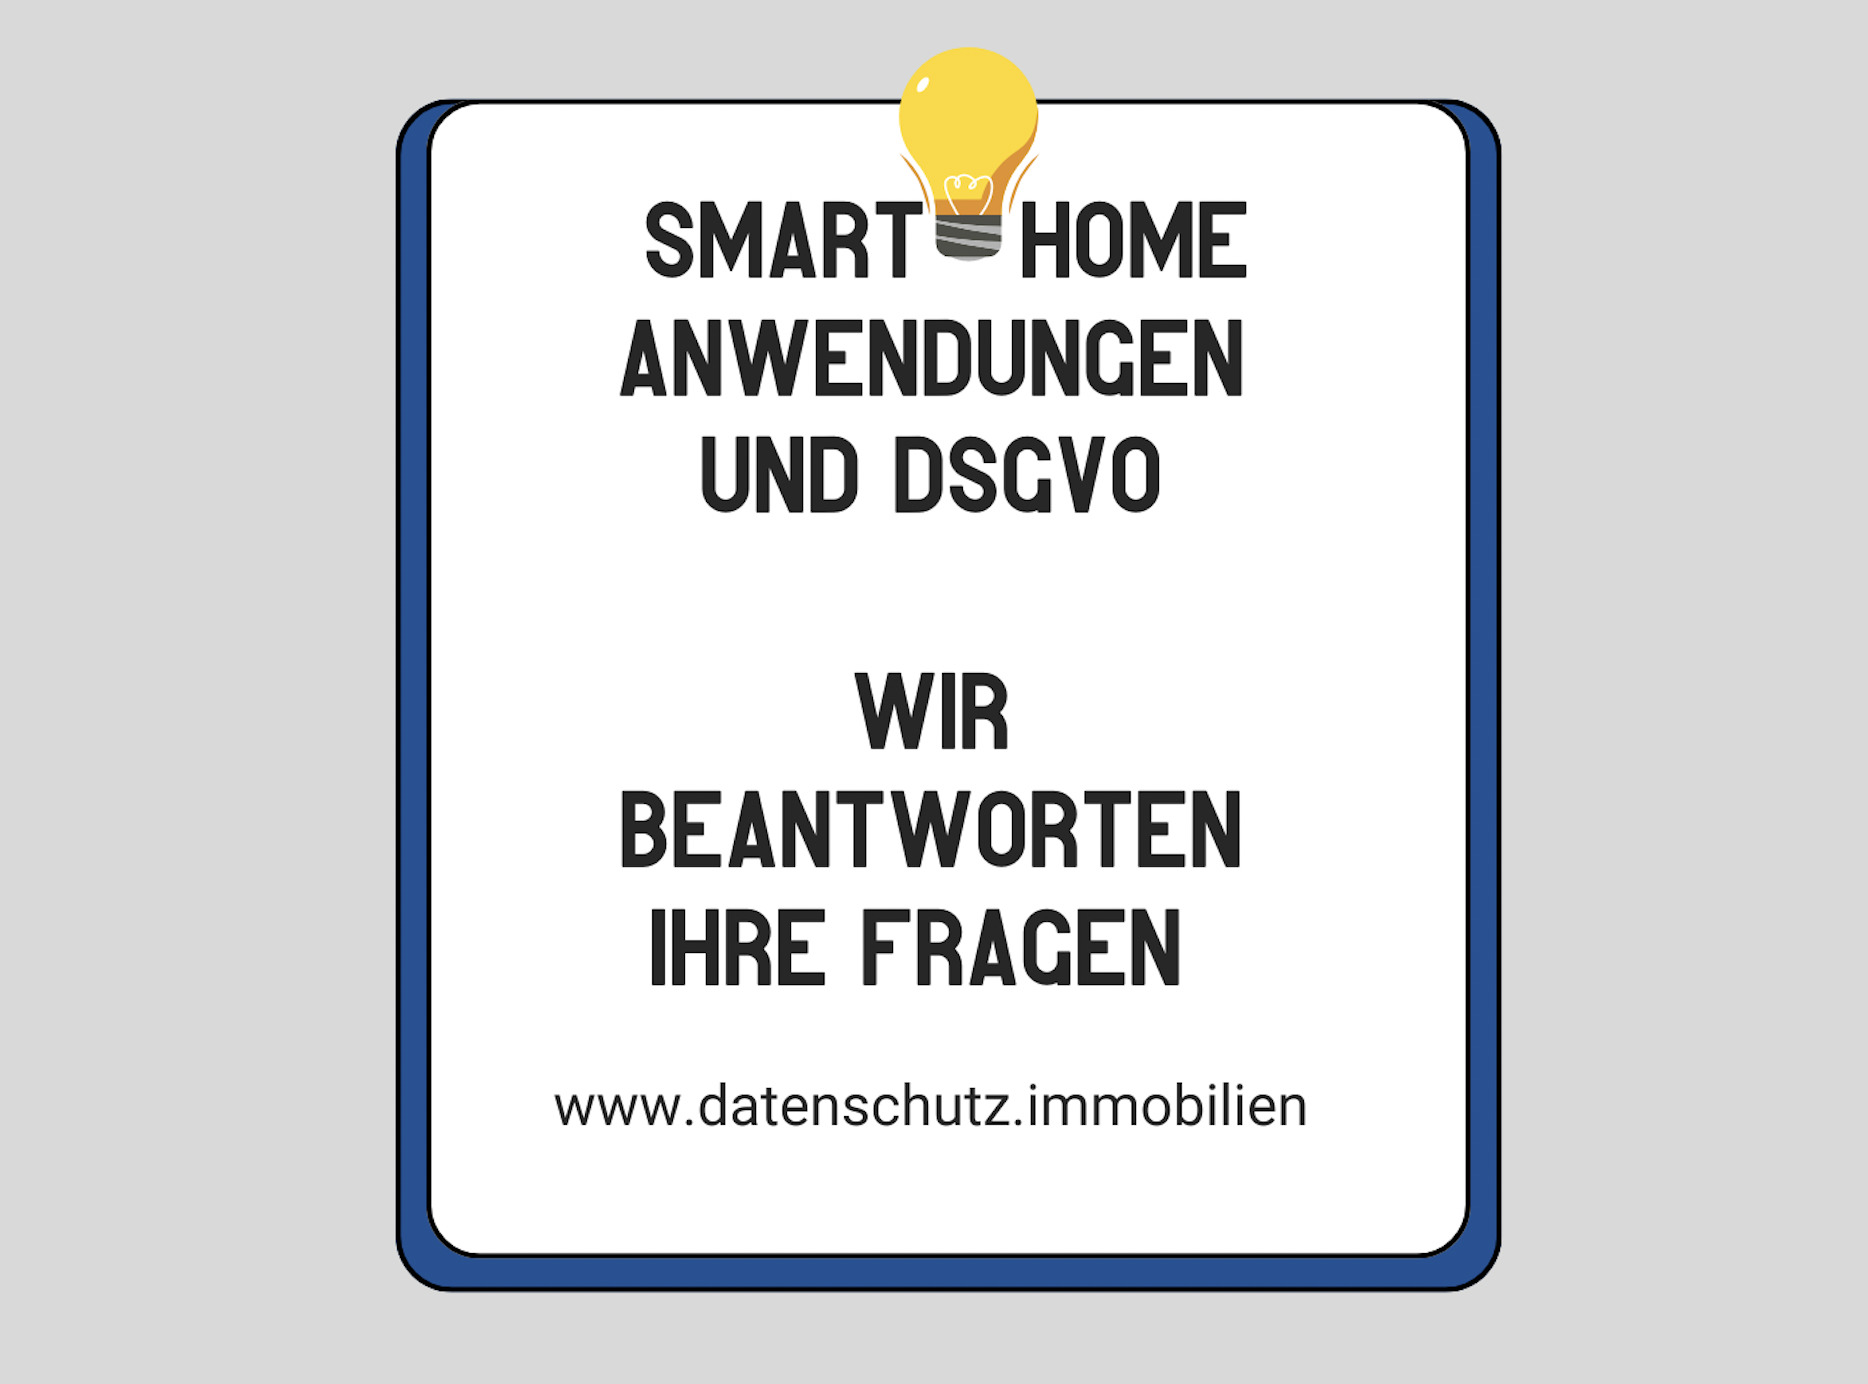 Smart Home und DSGVO